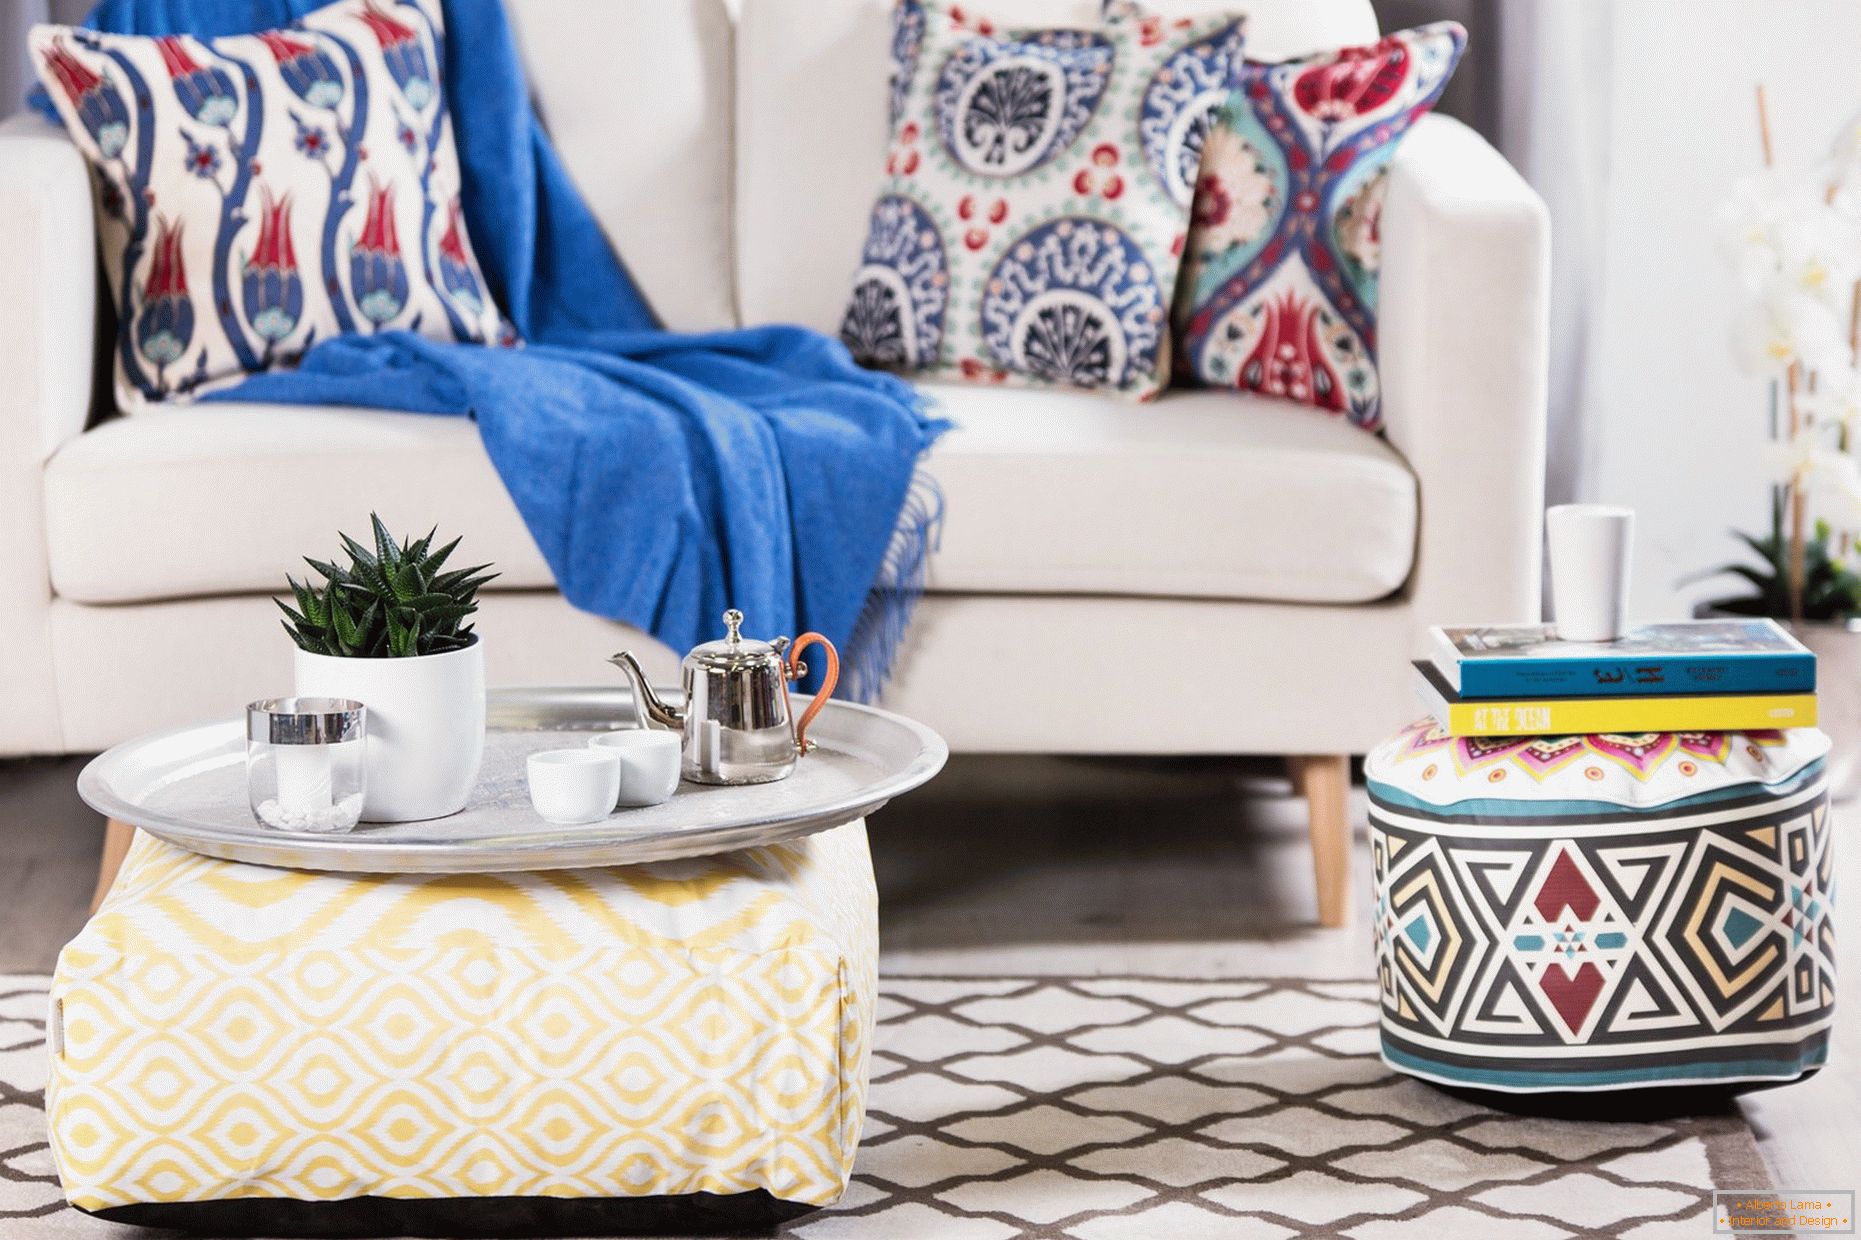 Coperta blu e cuscini in stile orientale sul divano